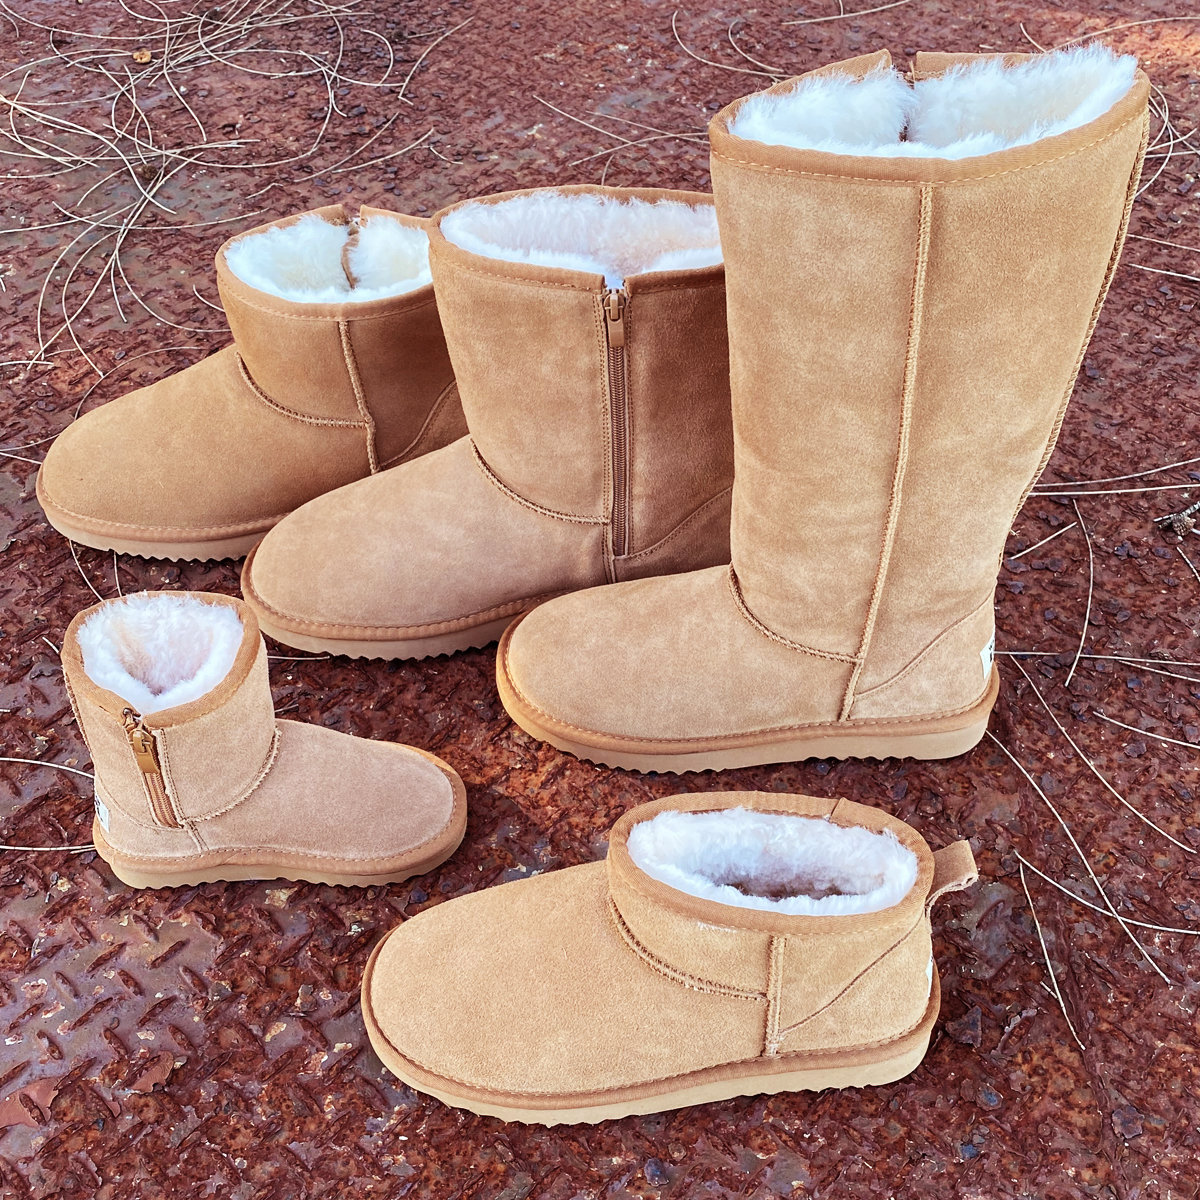 WARATAH UGG Water Resistant Chestnut Ugg Boots

#waratahugg #southcoastnsw #sheepskin #moruya #australian #ontrend #ugg #uggs #uggboots #zipboots #ultraminiuggboots #kidszipboots #chestnut #womensboots #mensboots #kidsboots #boots #tallboot #waterresistant #chestnutboots